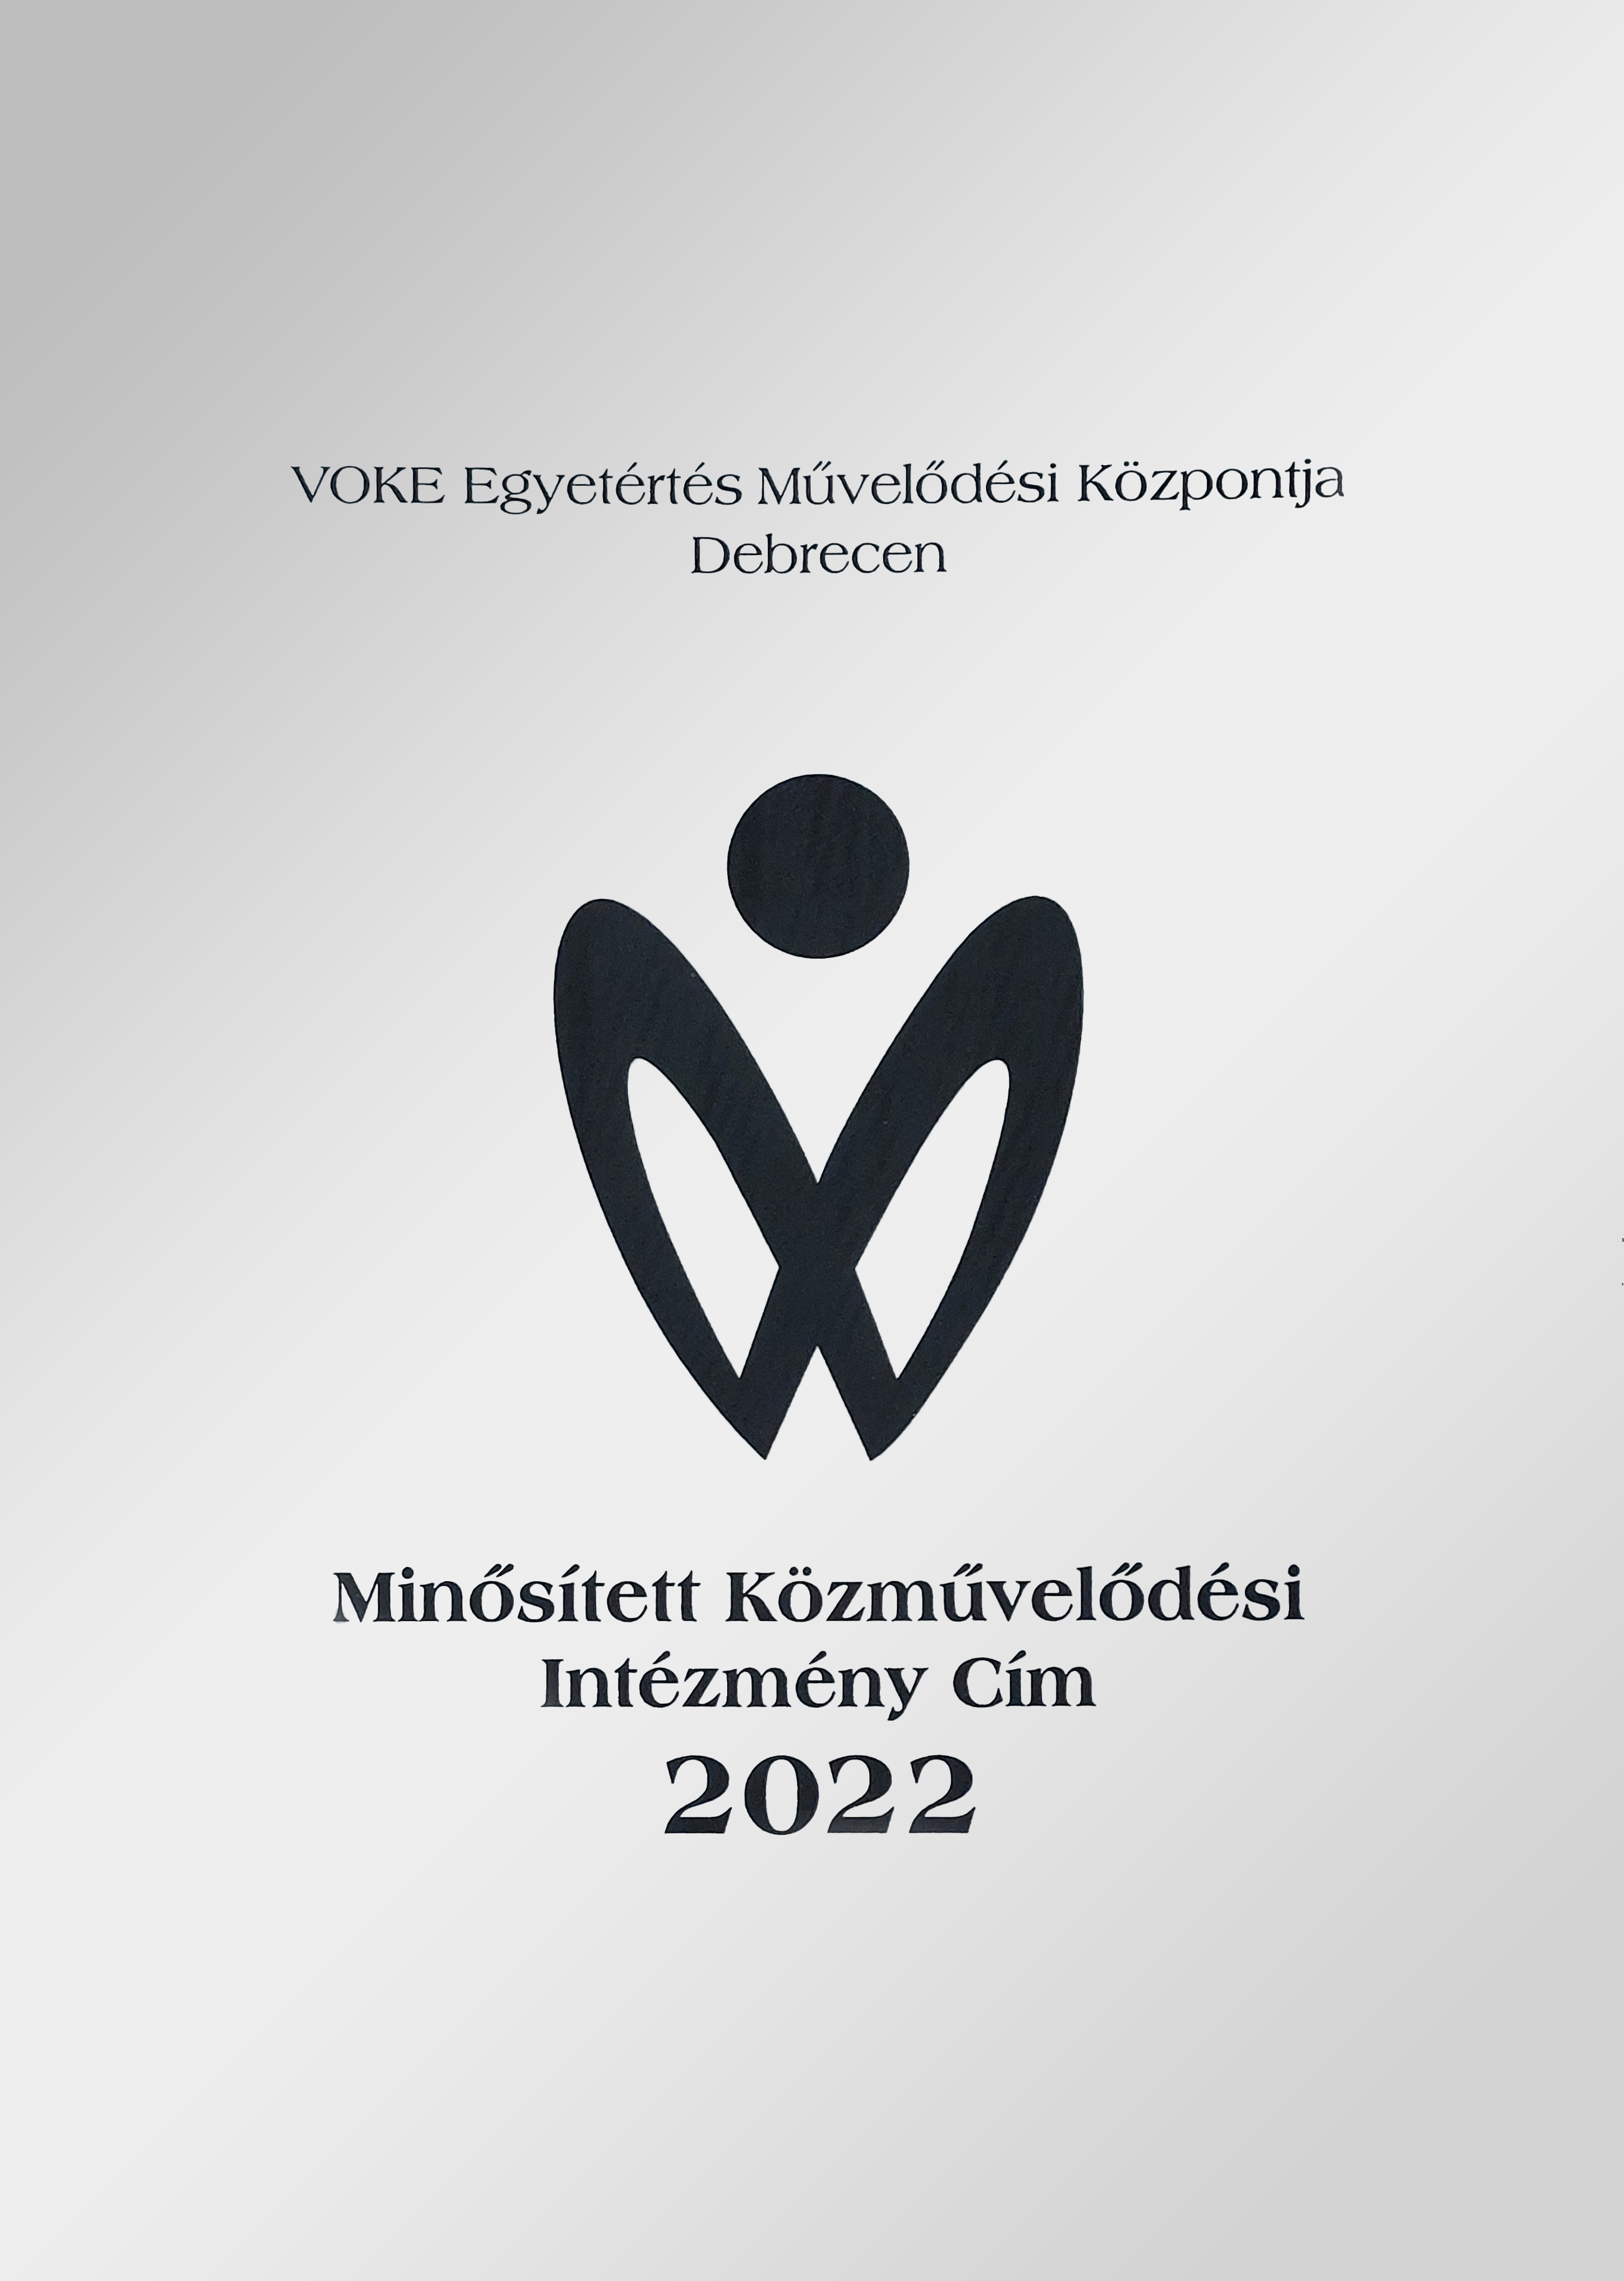 Minősített Közművelődési Intézmény cím átvétele 2023. január 21-én az Országos Széchenyi Könyvtárban.